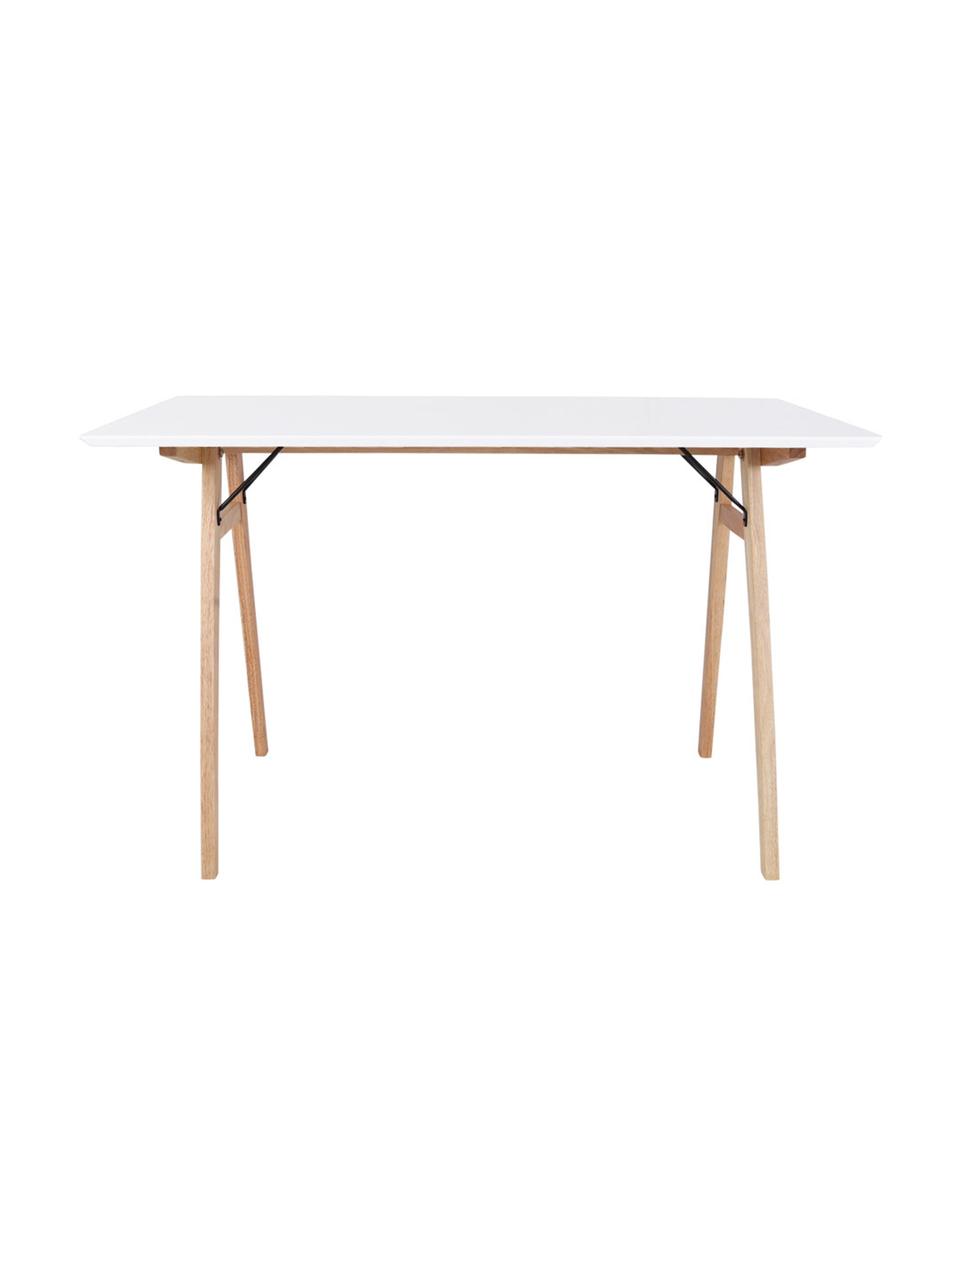 Psací stůl s bílou deskou Vojens, MDF deska (dřevovláknitá deska střední hustoty), kaučukové dřevo, Dřevo, bílá, Š 120 cm, H 60 cm